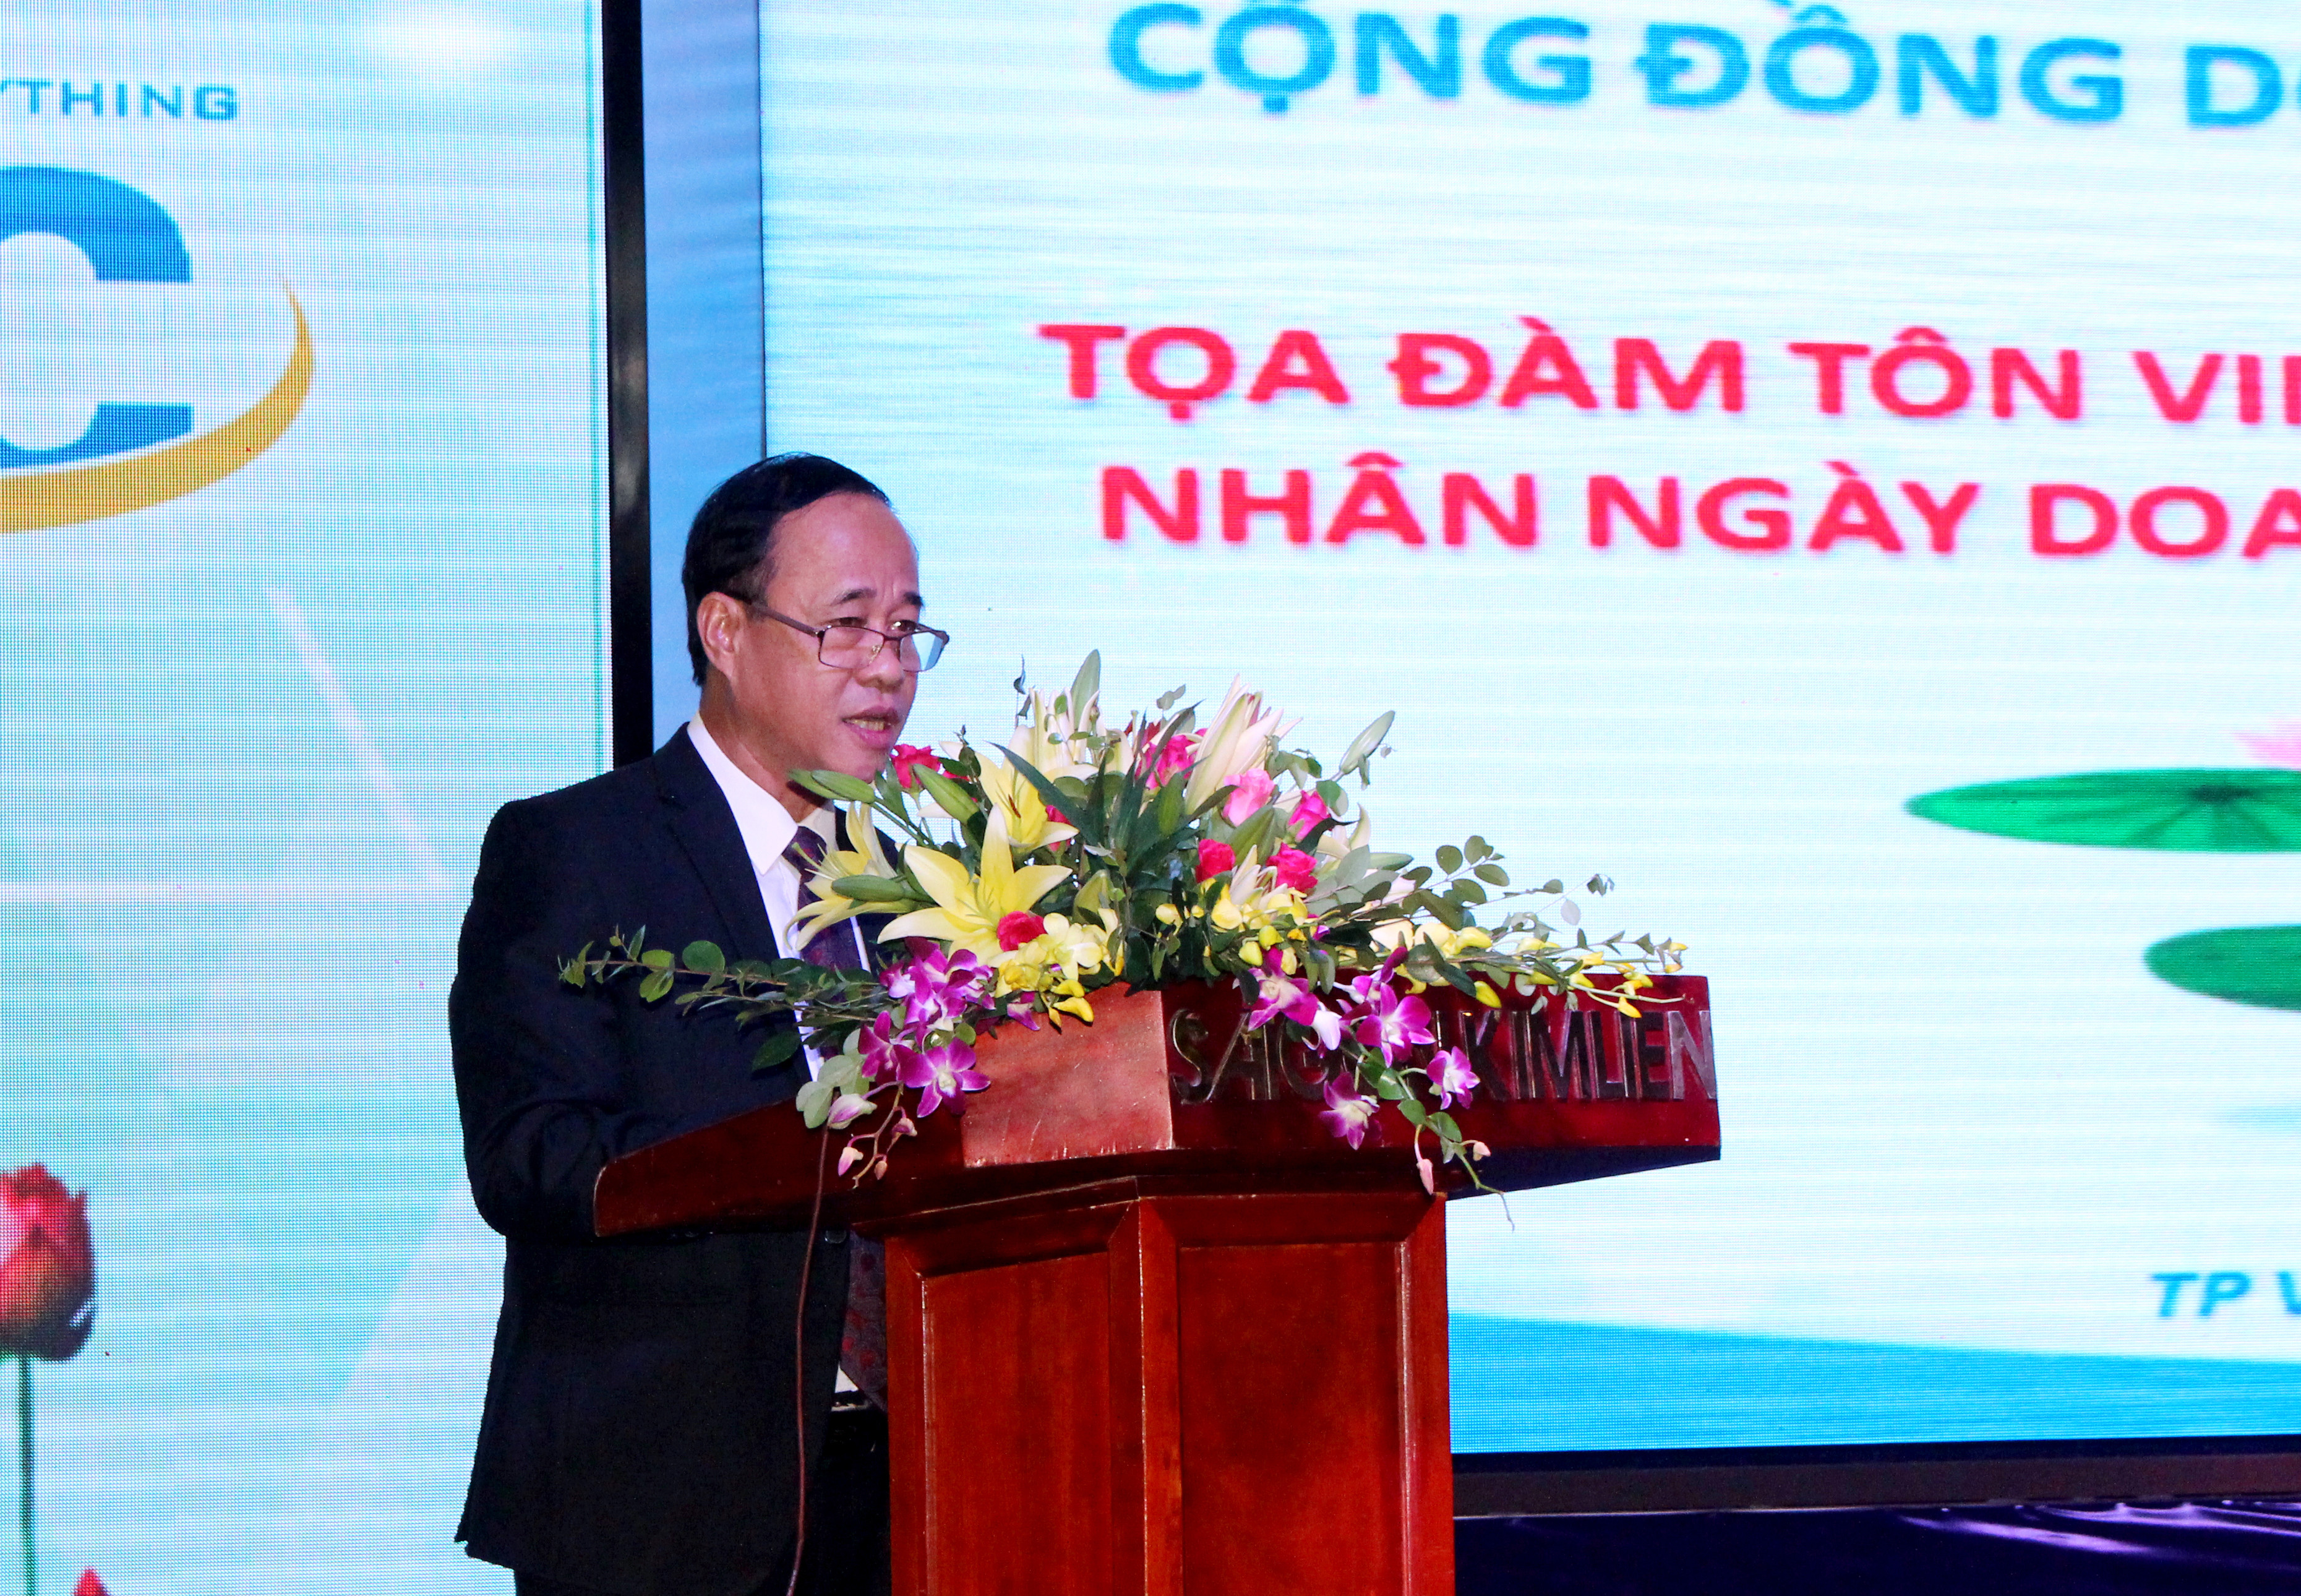 Phát biểu tại buổi lễ, ông Nguyễn Thanh Hùng – Chủ tịch Cộng đồng Doanh nghiệp Việt Nam (VEC) nhấn mạnh: VEC luôn đồng hành với các thành viên với “cam kết, hỗ trợ cùng phát triển”. Ảnh: Đinh Nguyệt